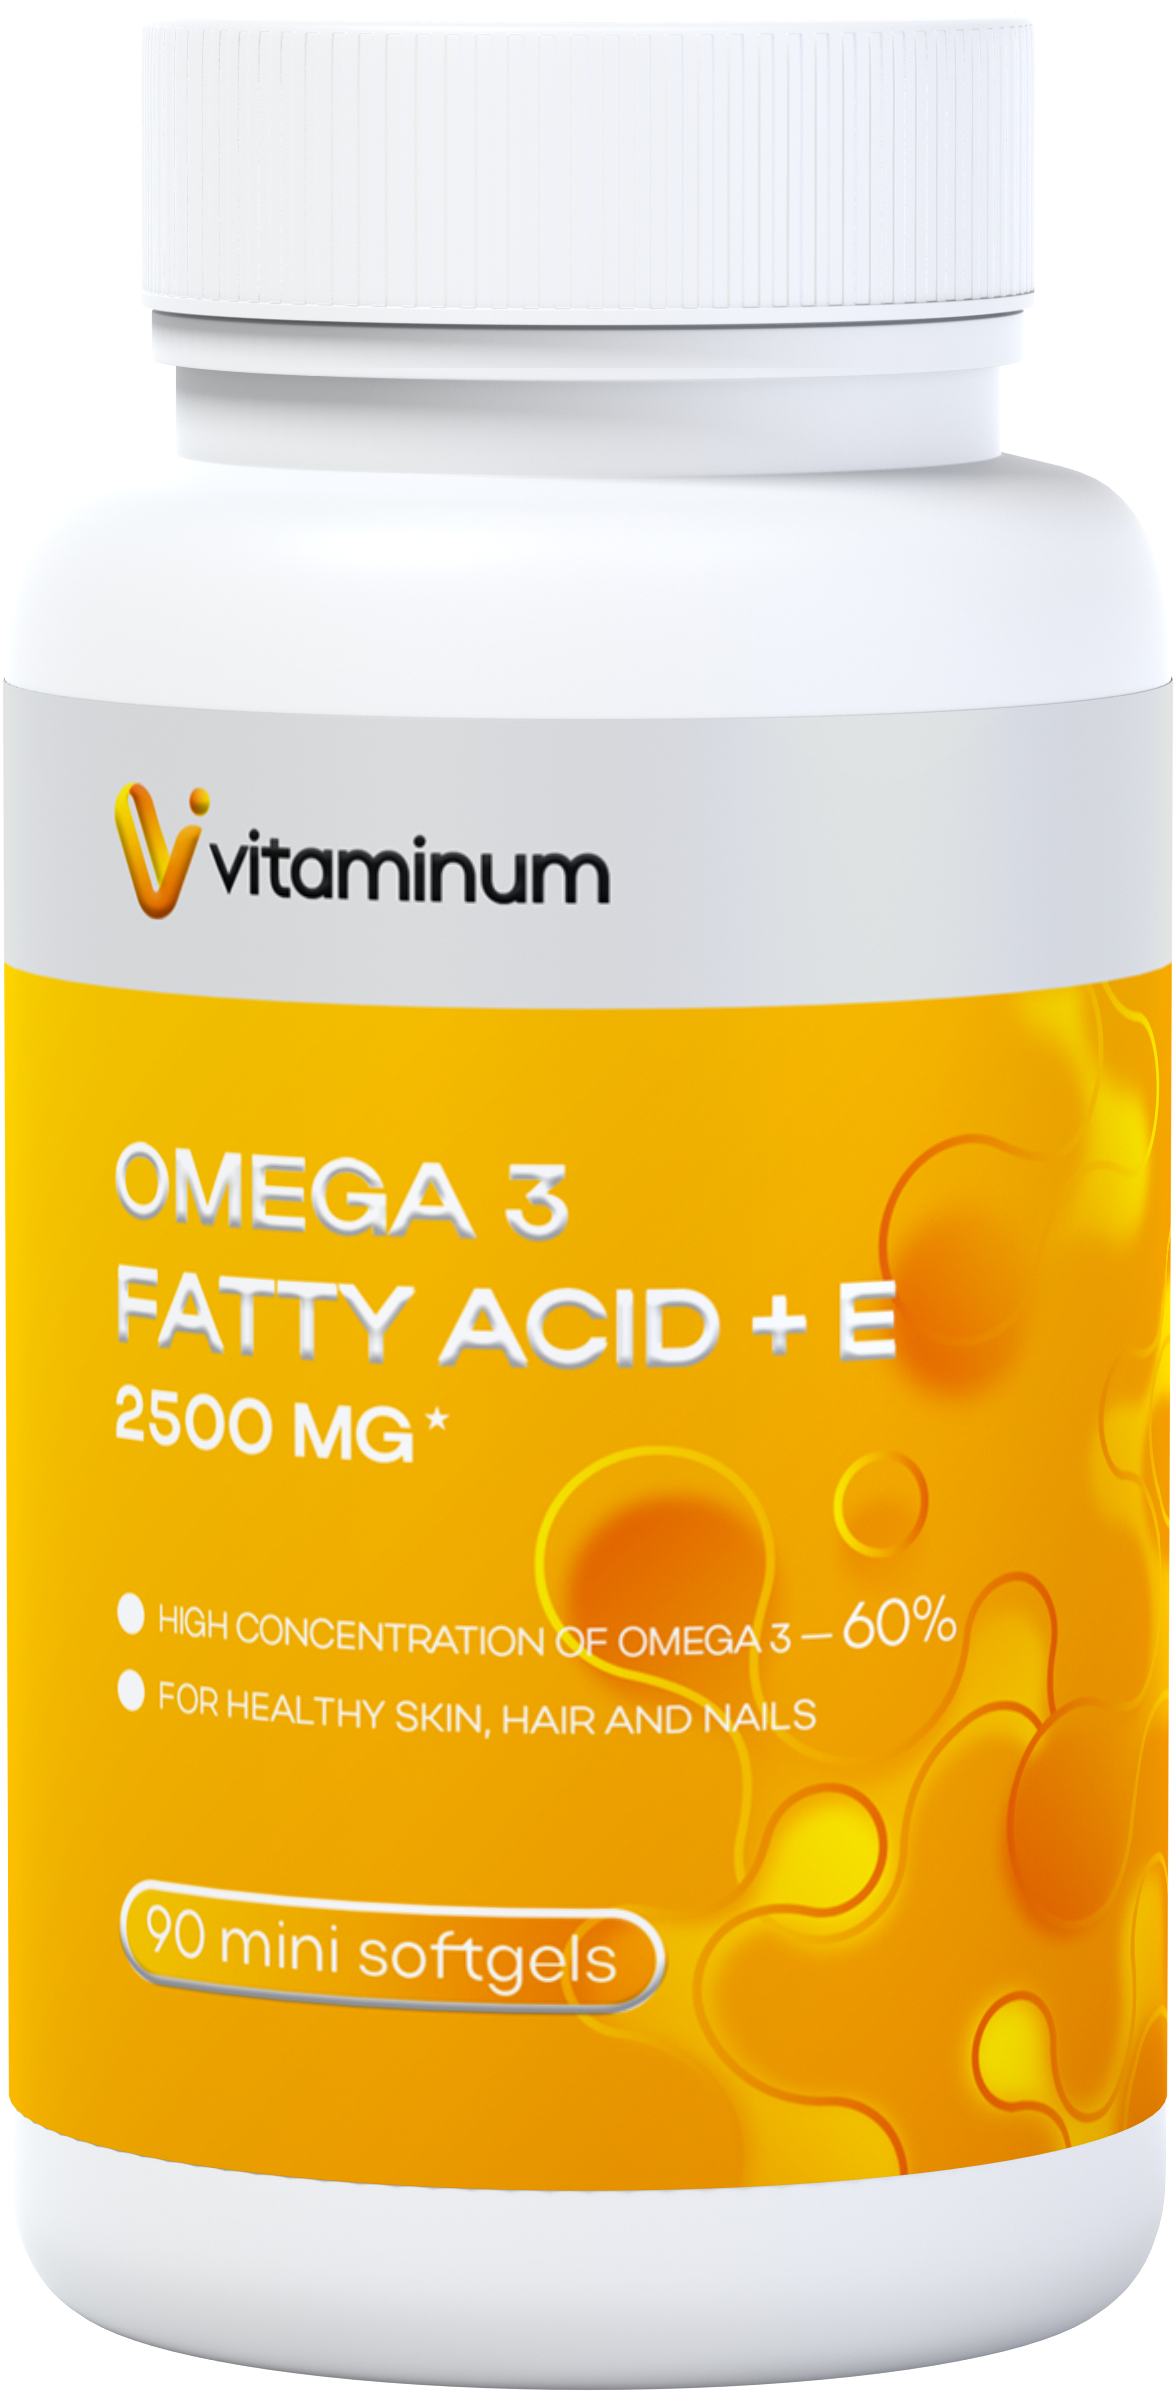  Vitaminum ОМЕГА 3 60% + витамин Е (2500 MG*) 90 капсул 700 мг   в Чебоксарах